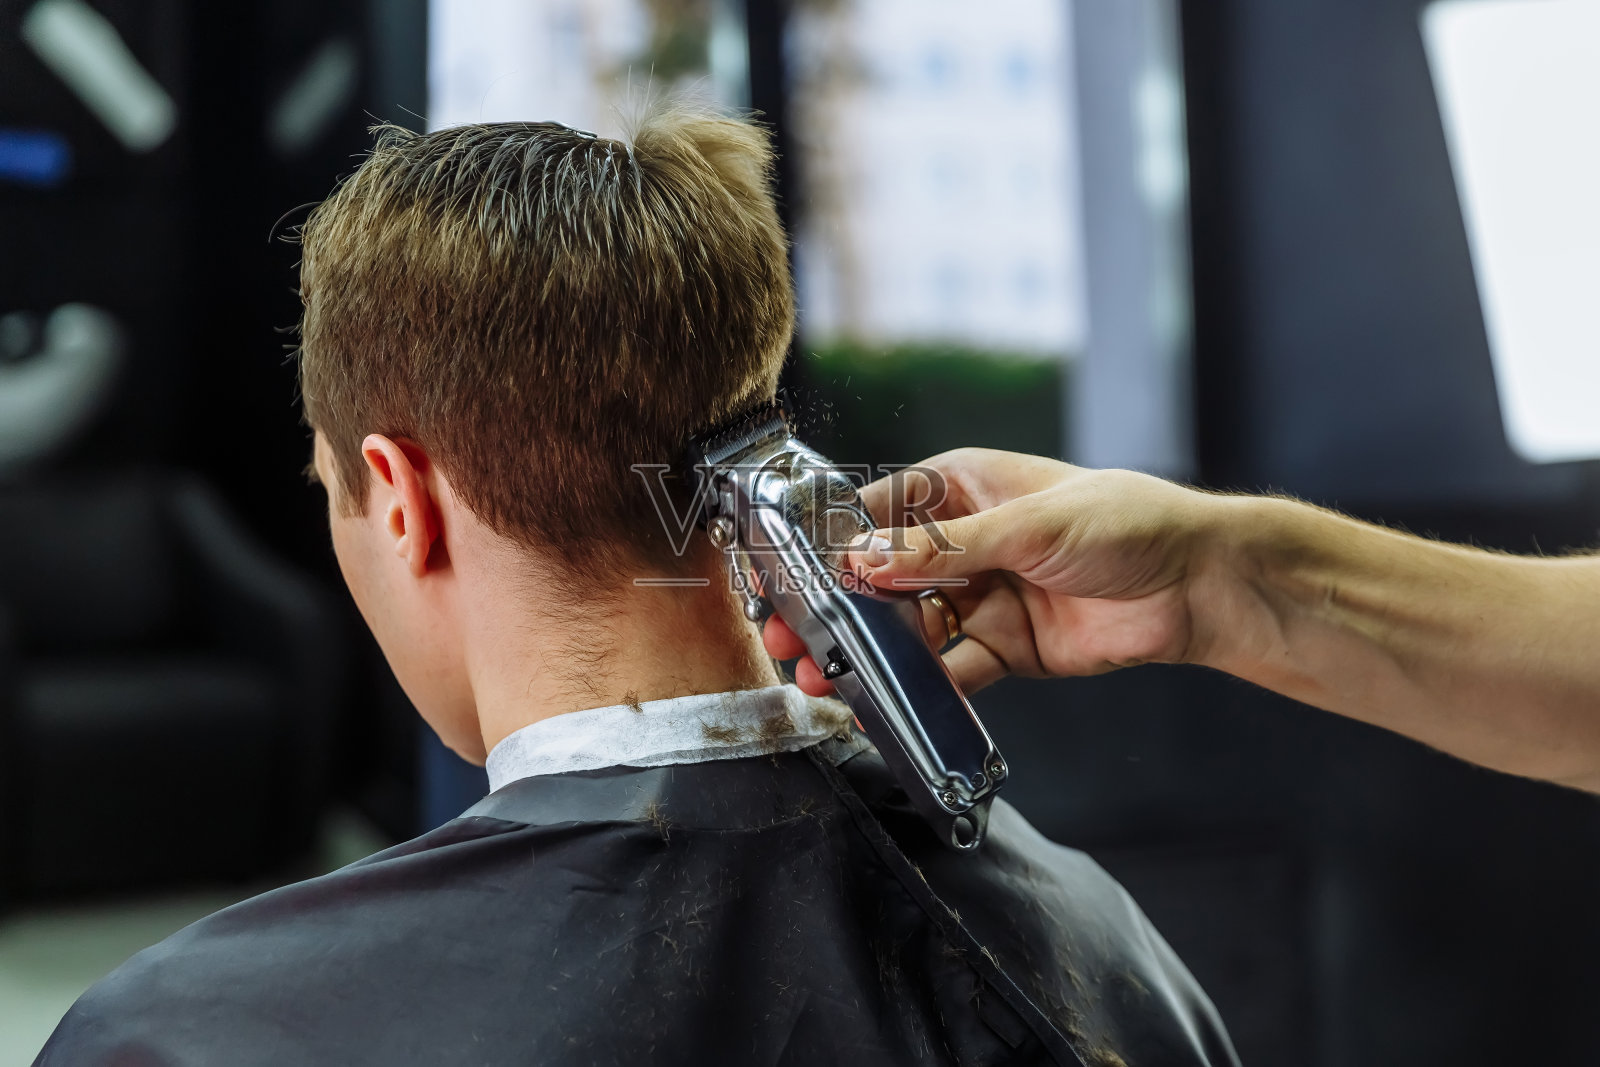 男性用电动剃须刀理发。理发师在理发店用理发器为顾客理发。男人用电动剃须刀理发照片摄影图片